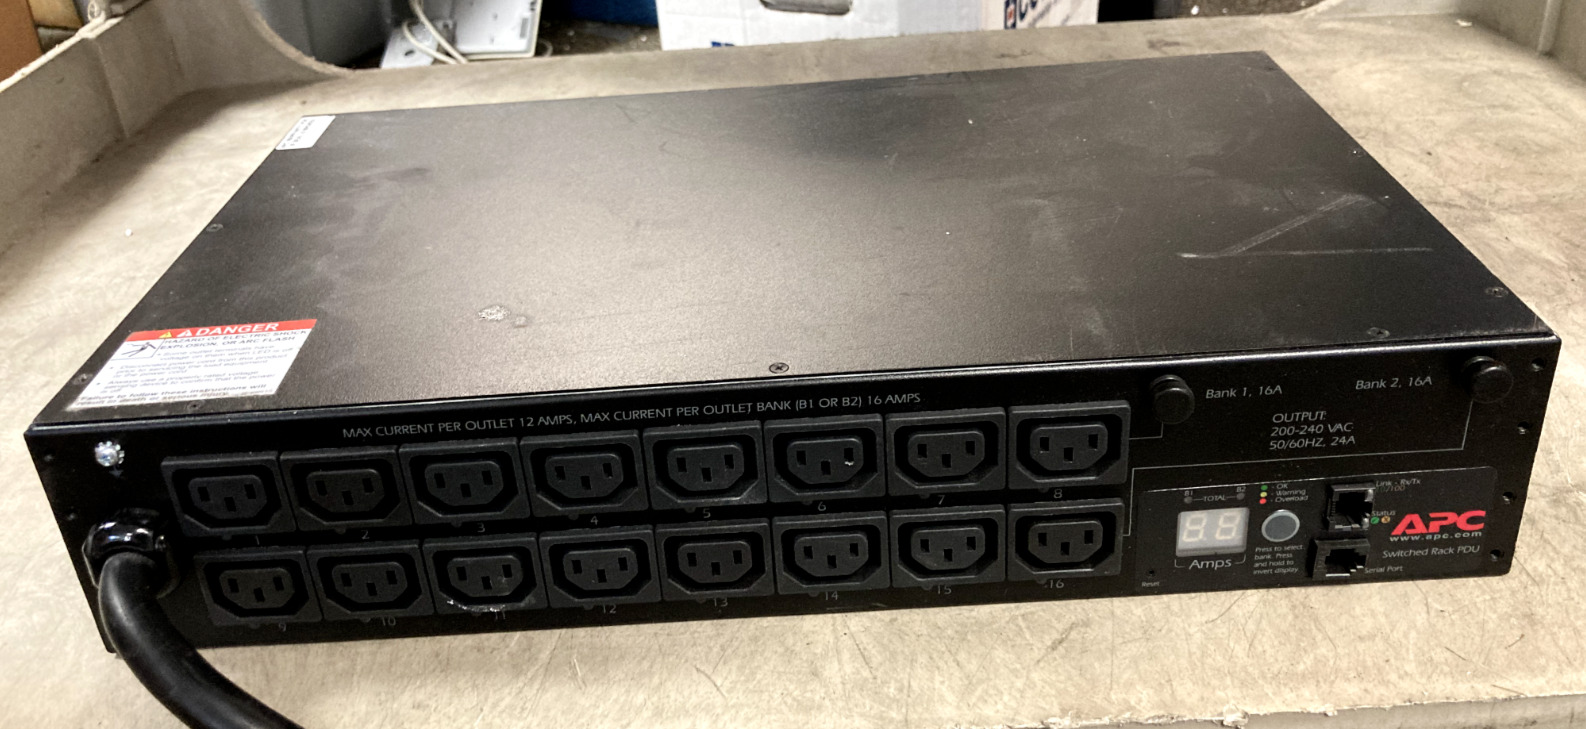 APC AP7911B Rack PDU Switched 2U 30A 208V (16)C13 16 Outlet